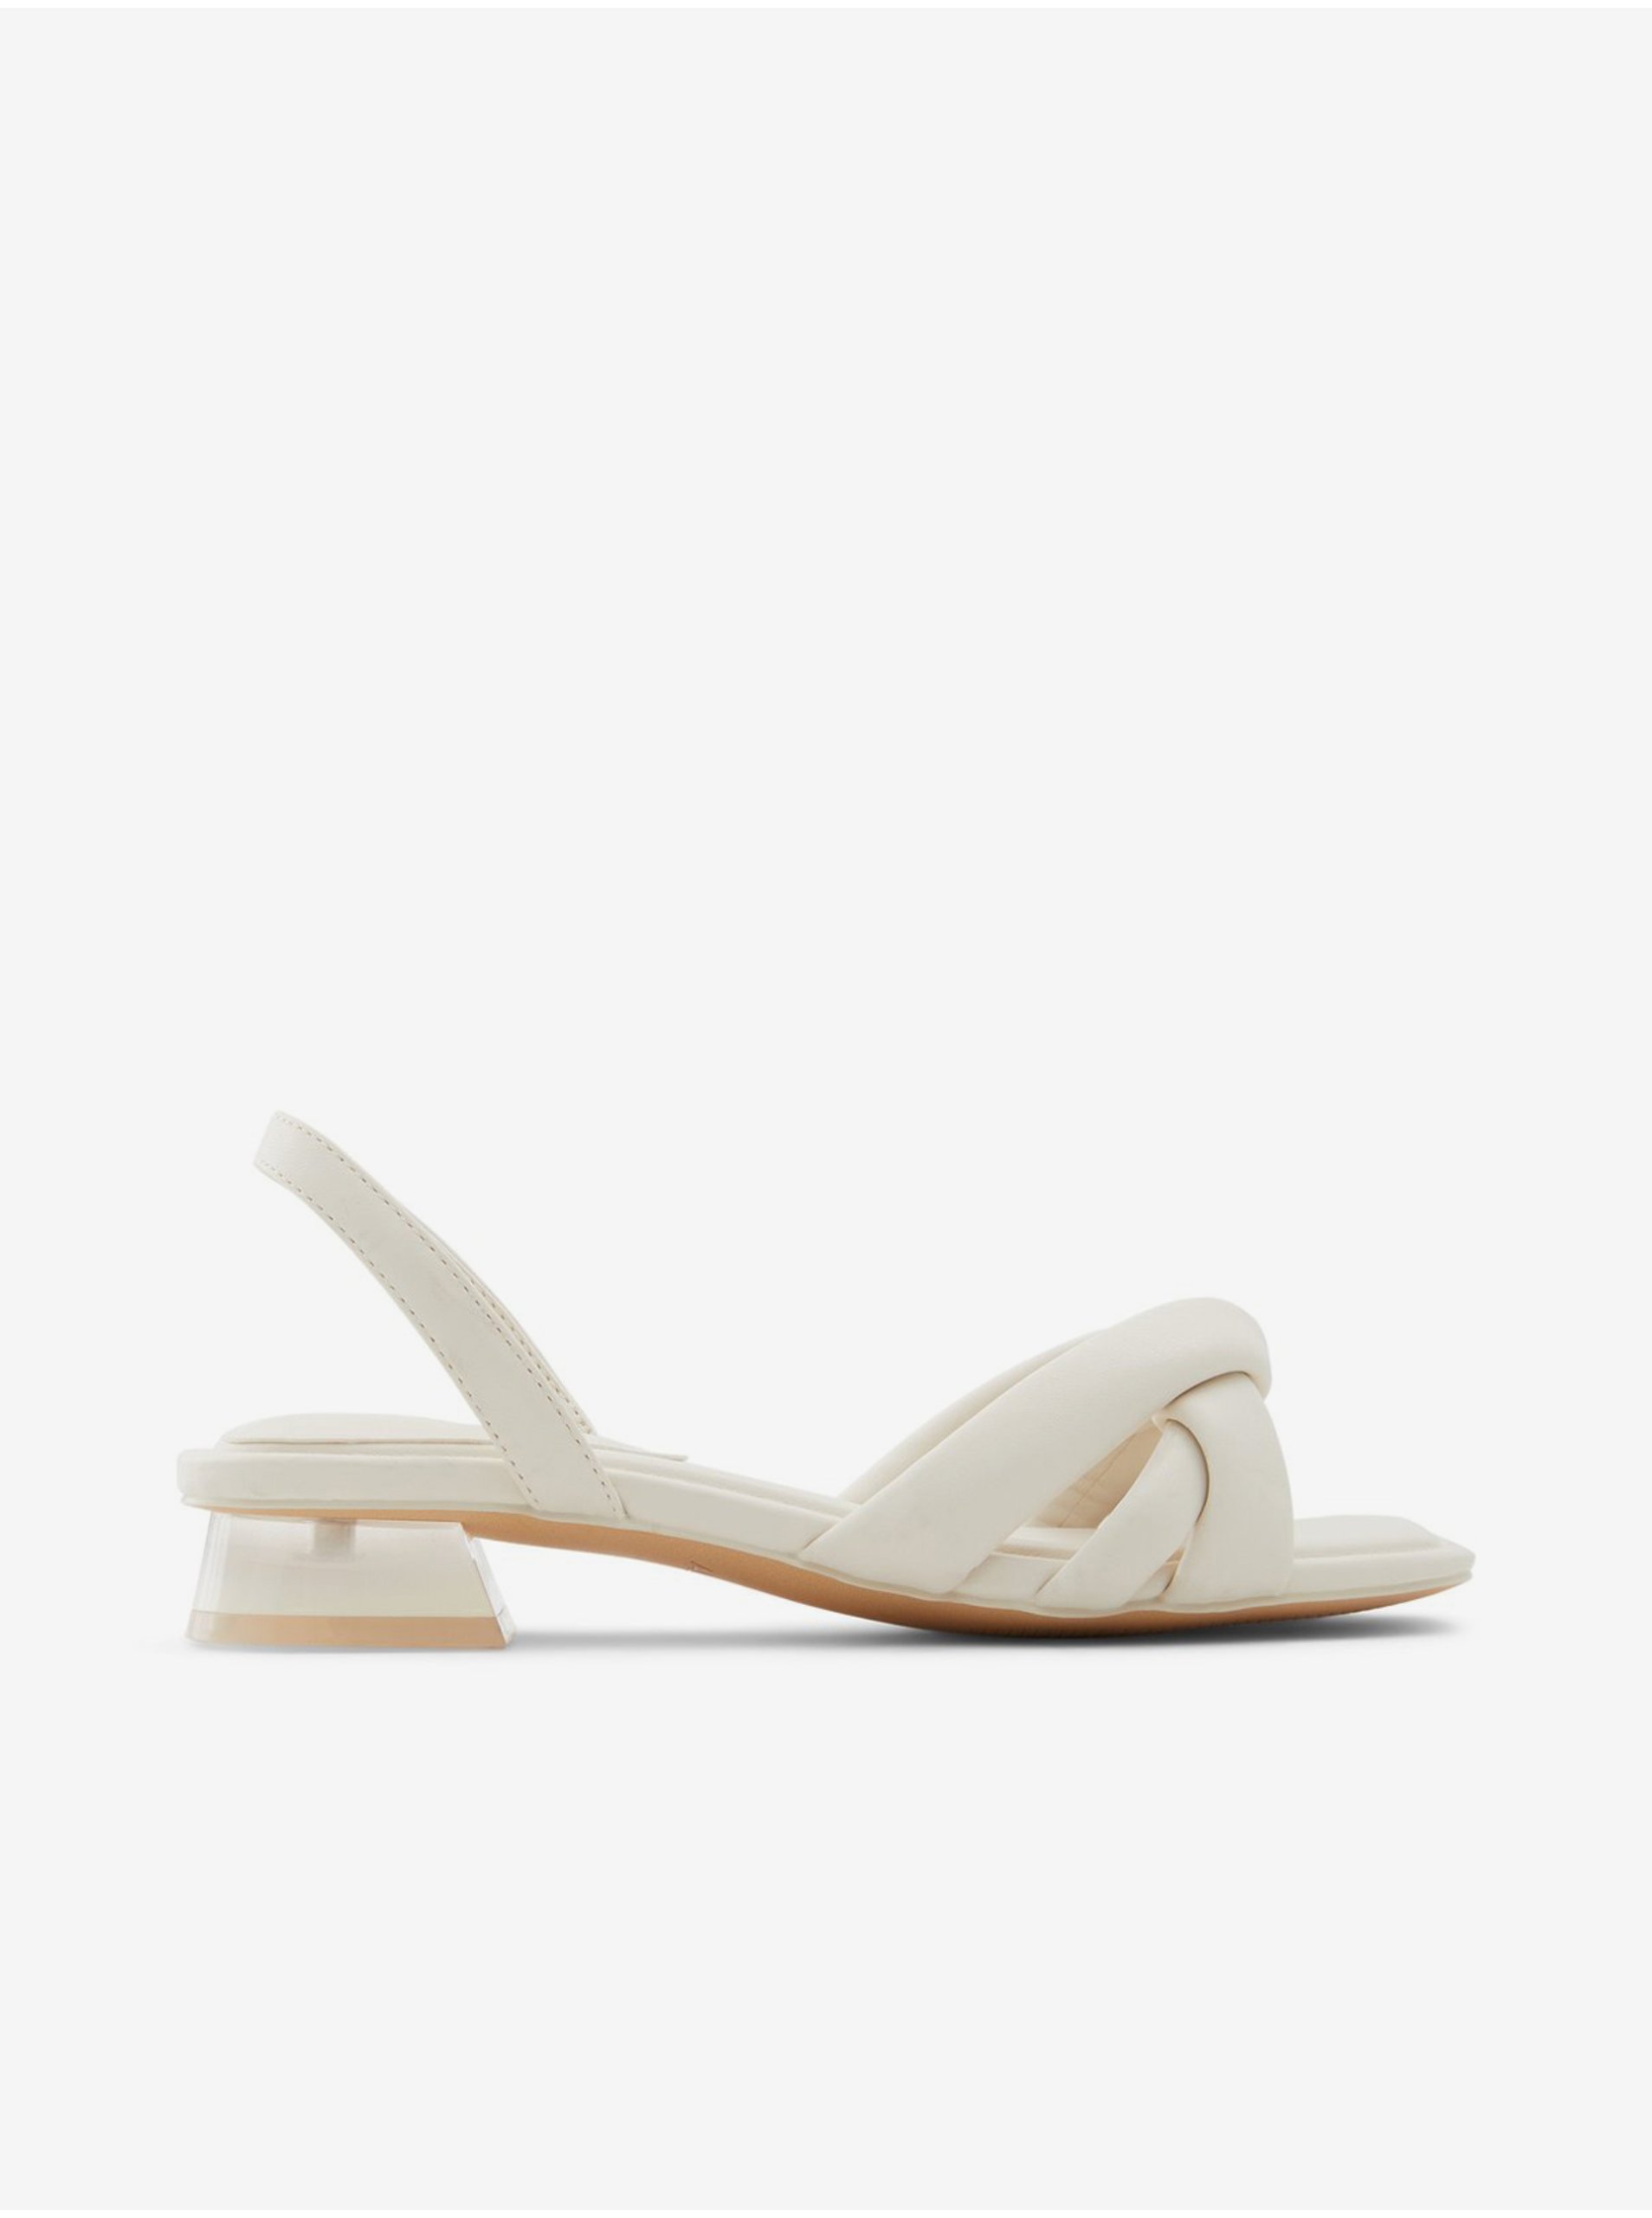 Lacno Biele dámske sandále na podpätku ALDO Buttercupp